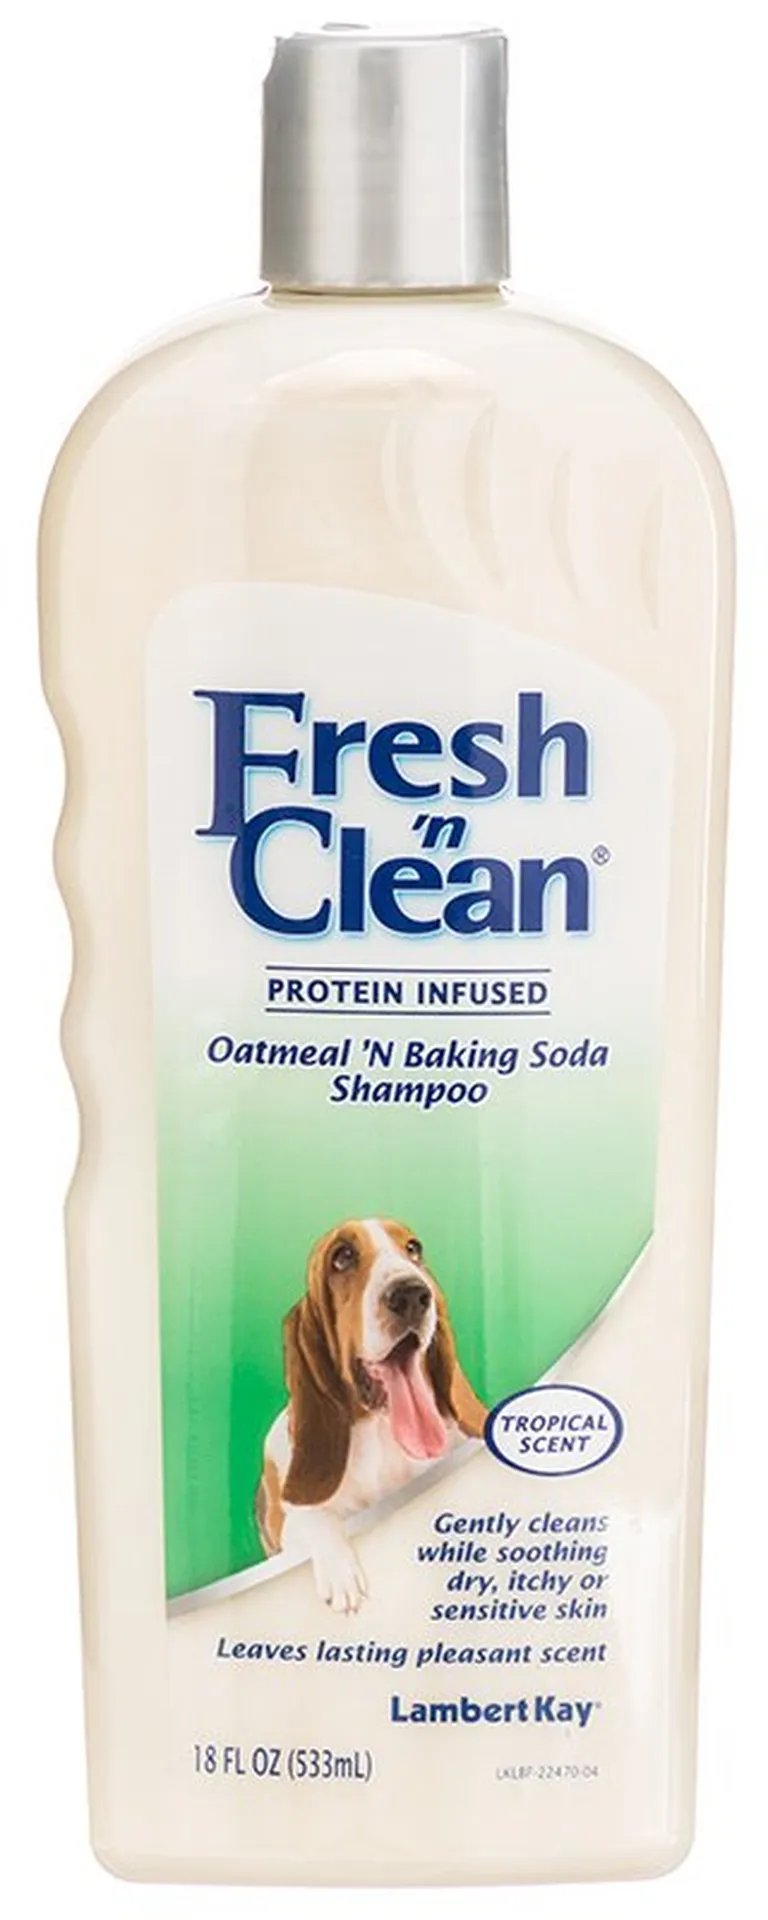 Fresh n Clean Oatmeal n Baking Soda Shampoo Tropical Scent Photo 1